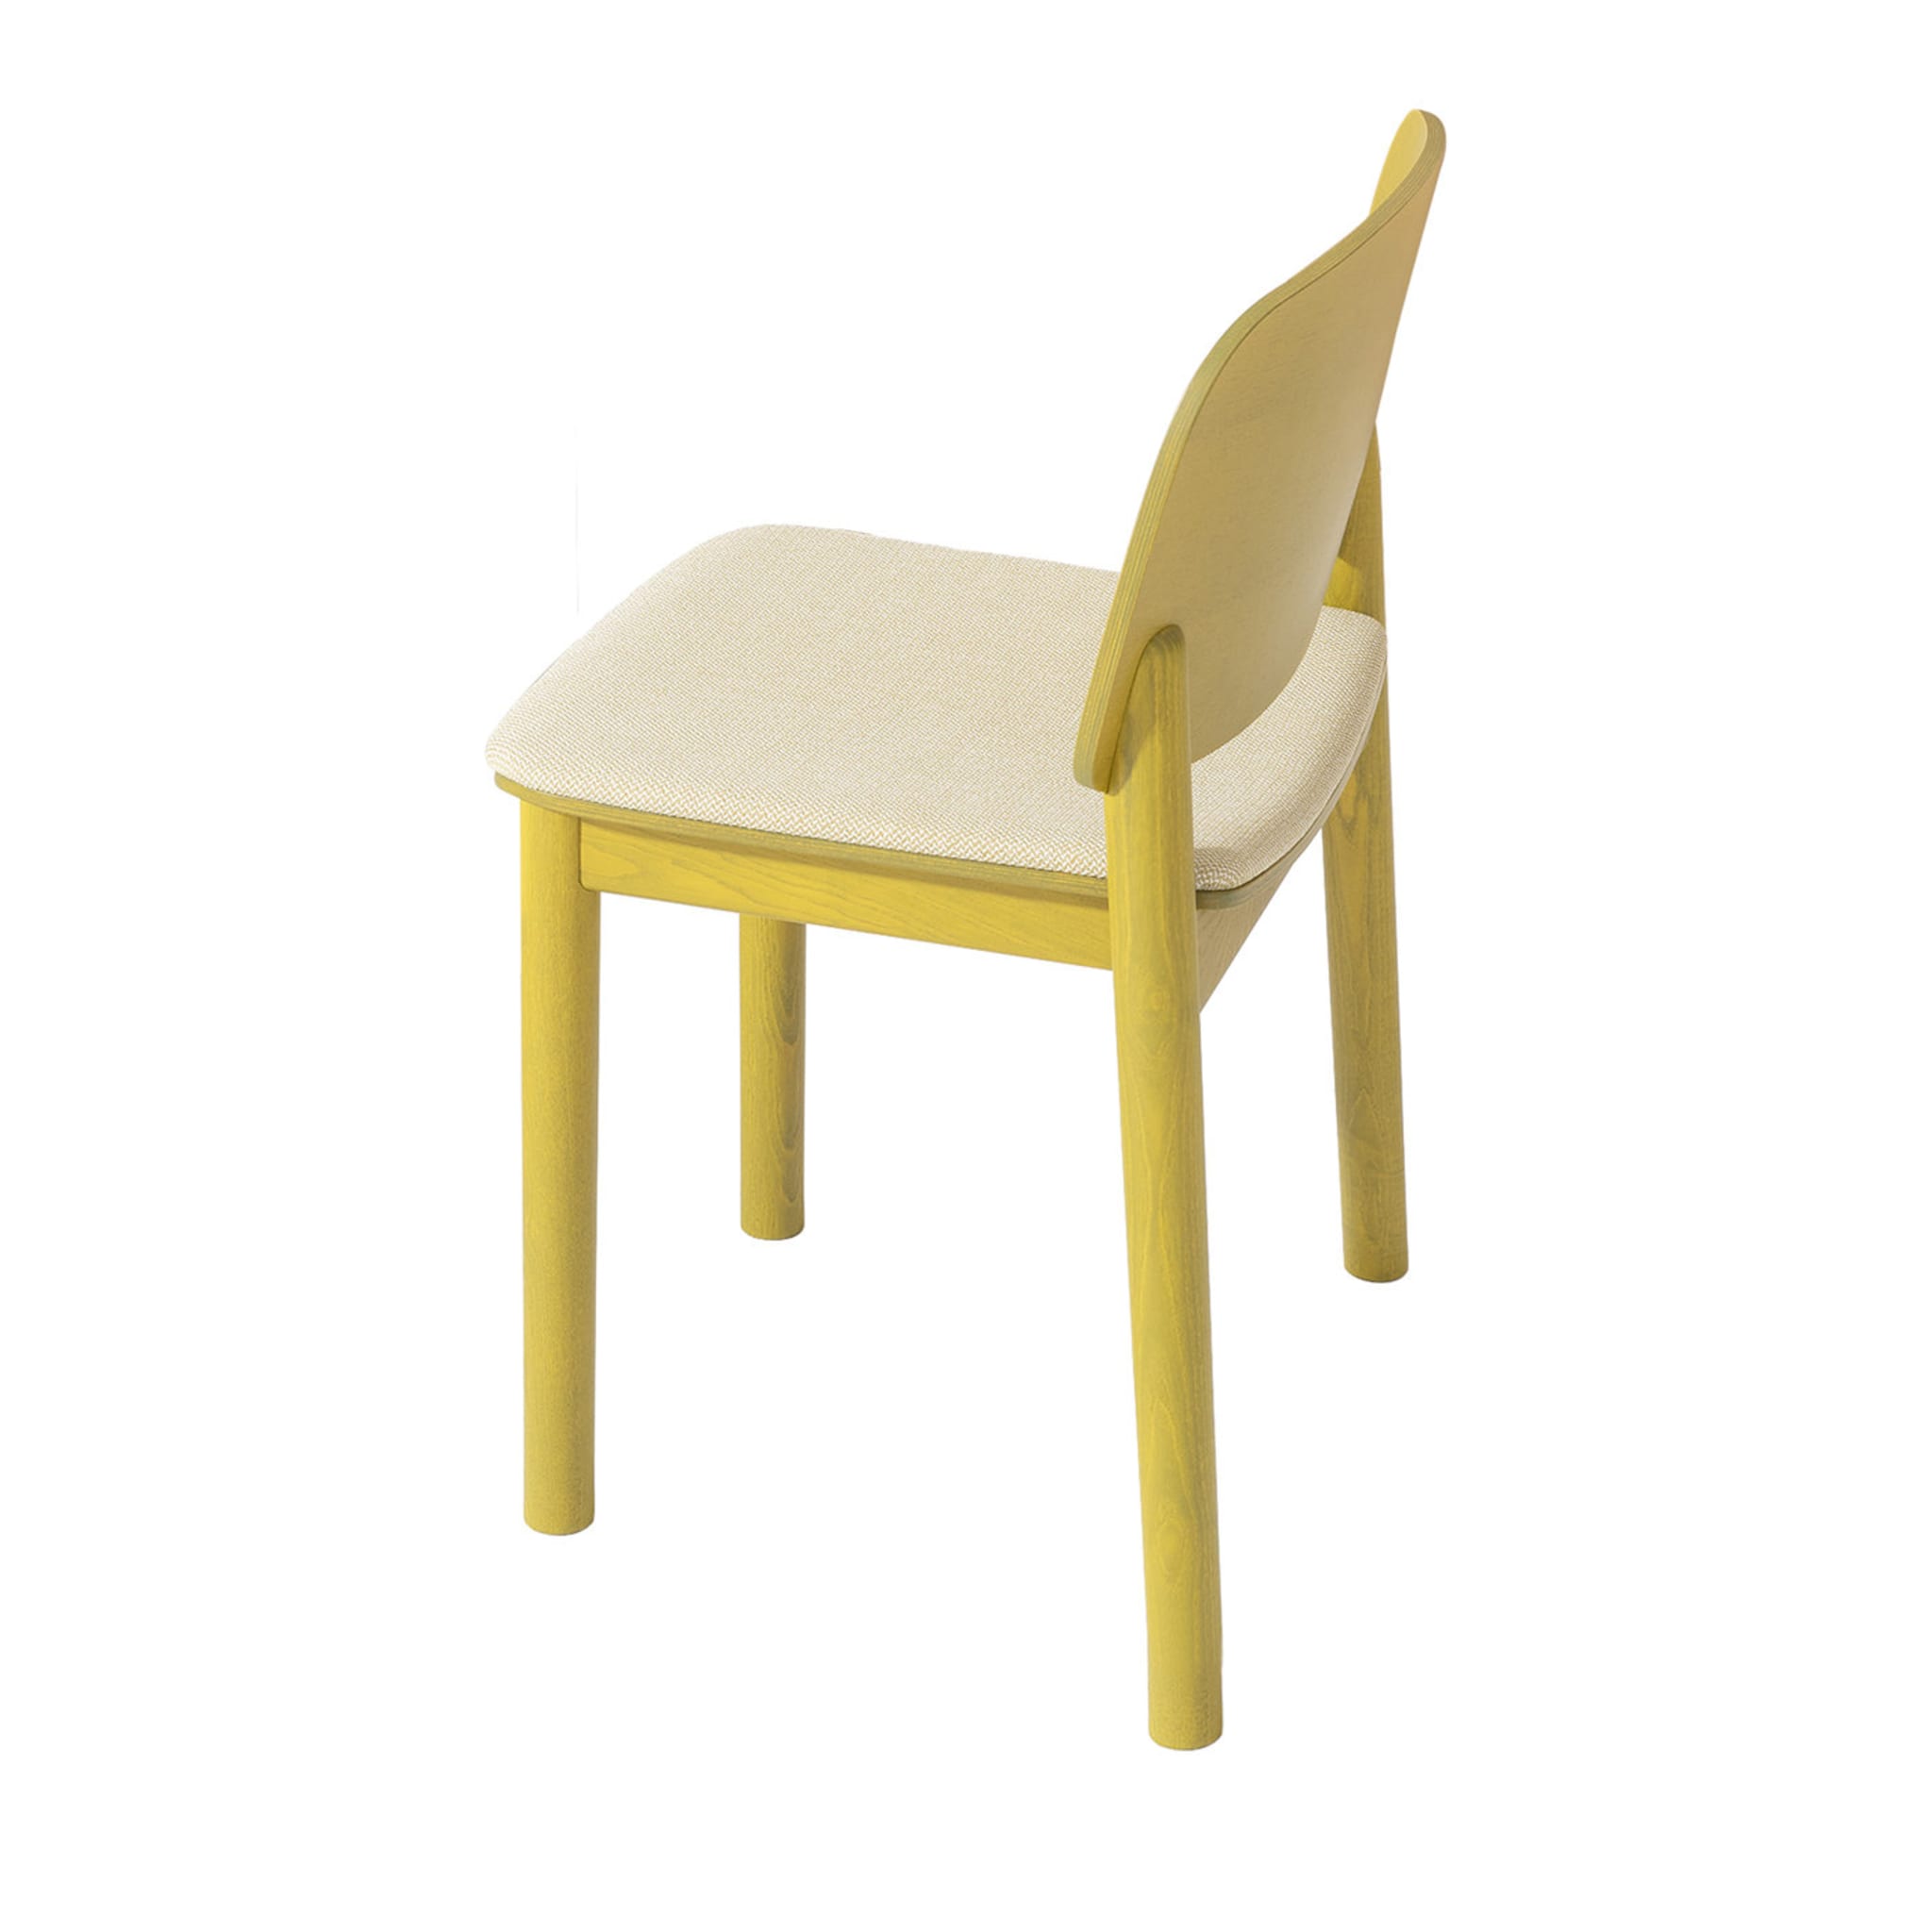 White 132 Chair by Harri Koskinen - Main view